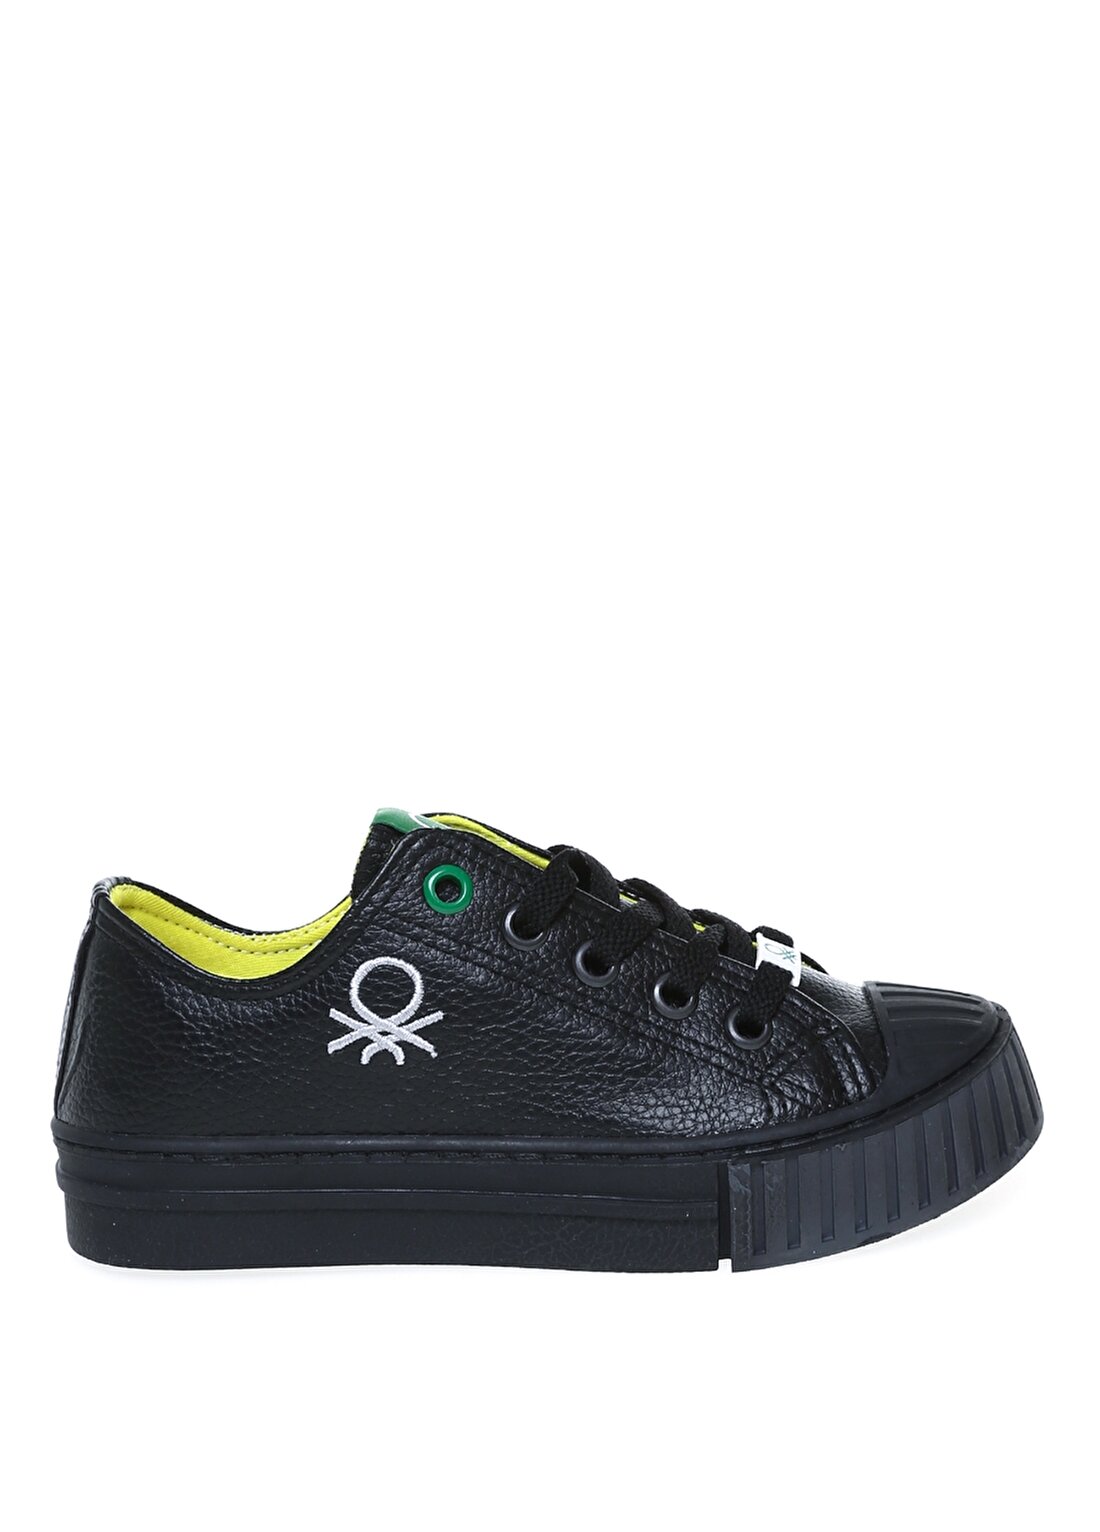 Benetton Siyah - Gri Erkek Çocuk Yürüyüş Ayakkabısı BN-30557